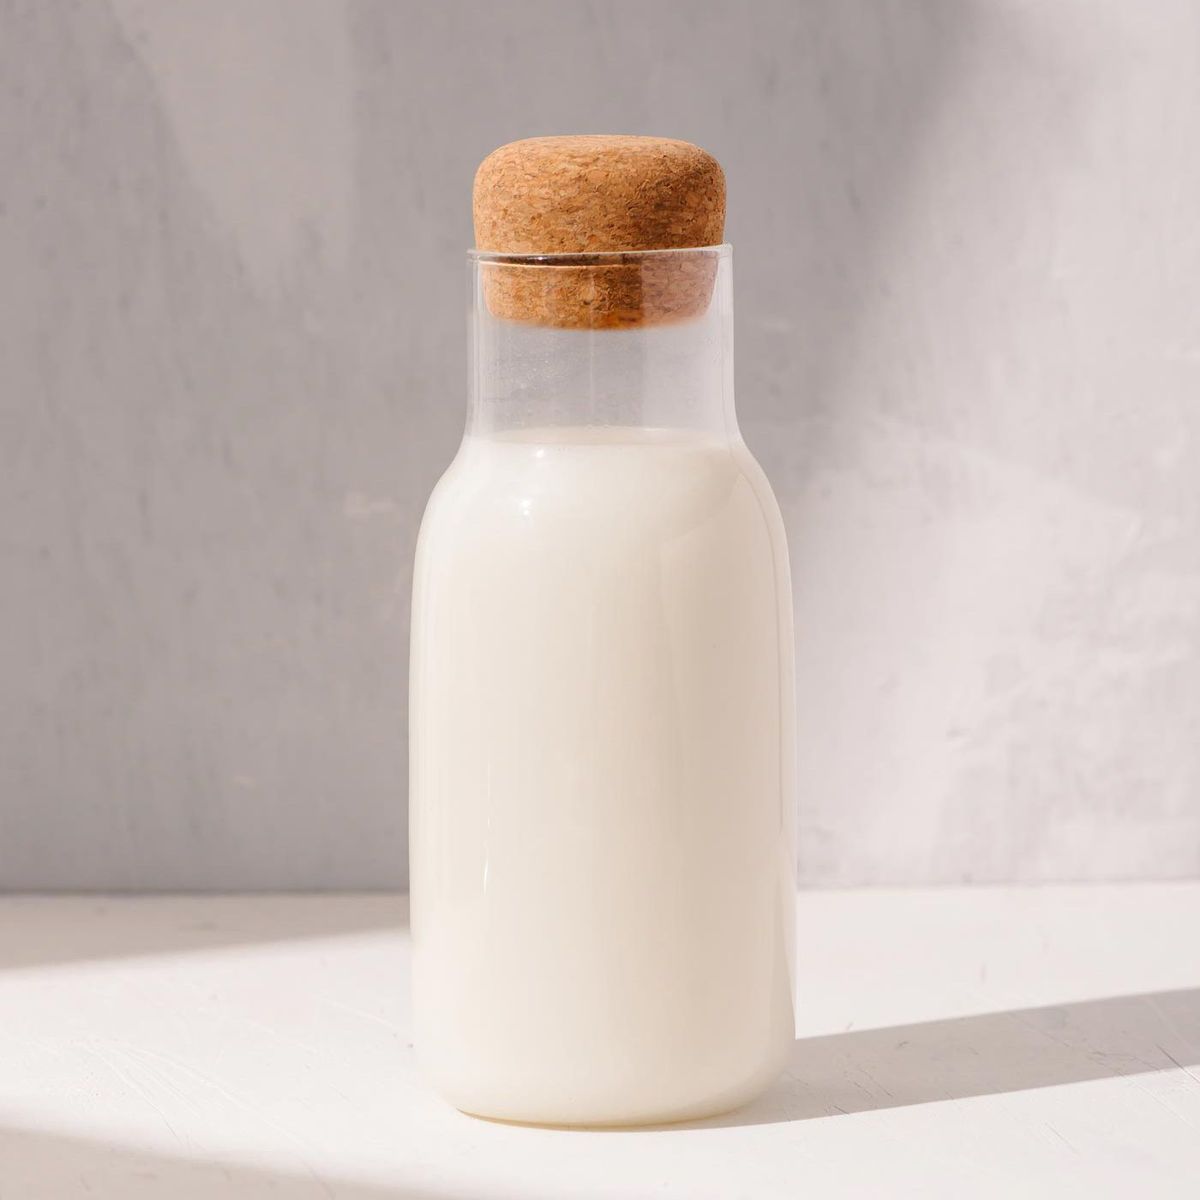 Mælk i en glasflaske med en korkplade